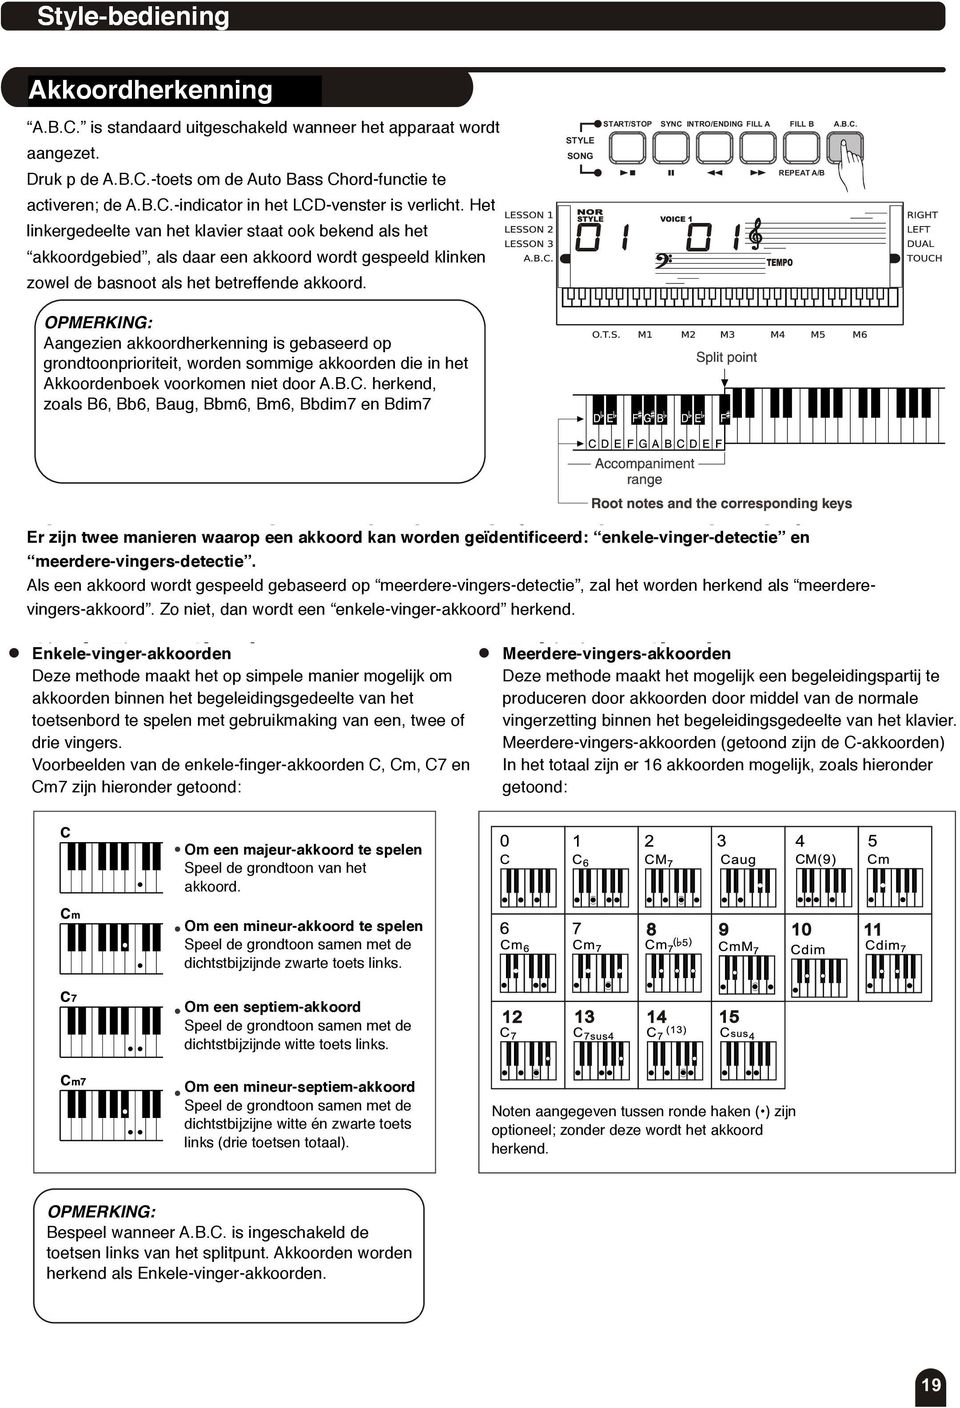 Het linkergedeelte left section of van the het keyboard klavier staat is known ook bekend as the als "chord het area", akkoordgebied, while playing the als chord, daar een both akkoord the bass wordt